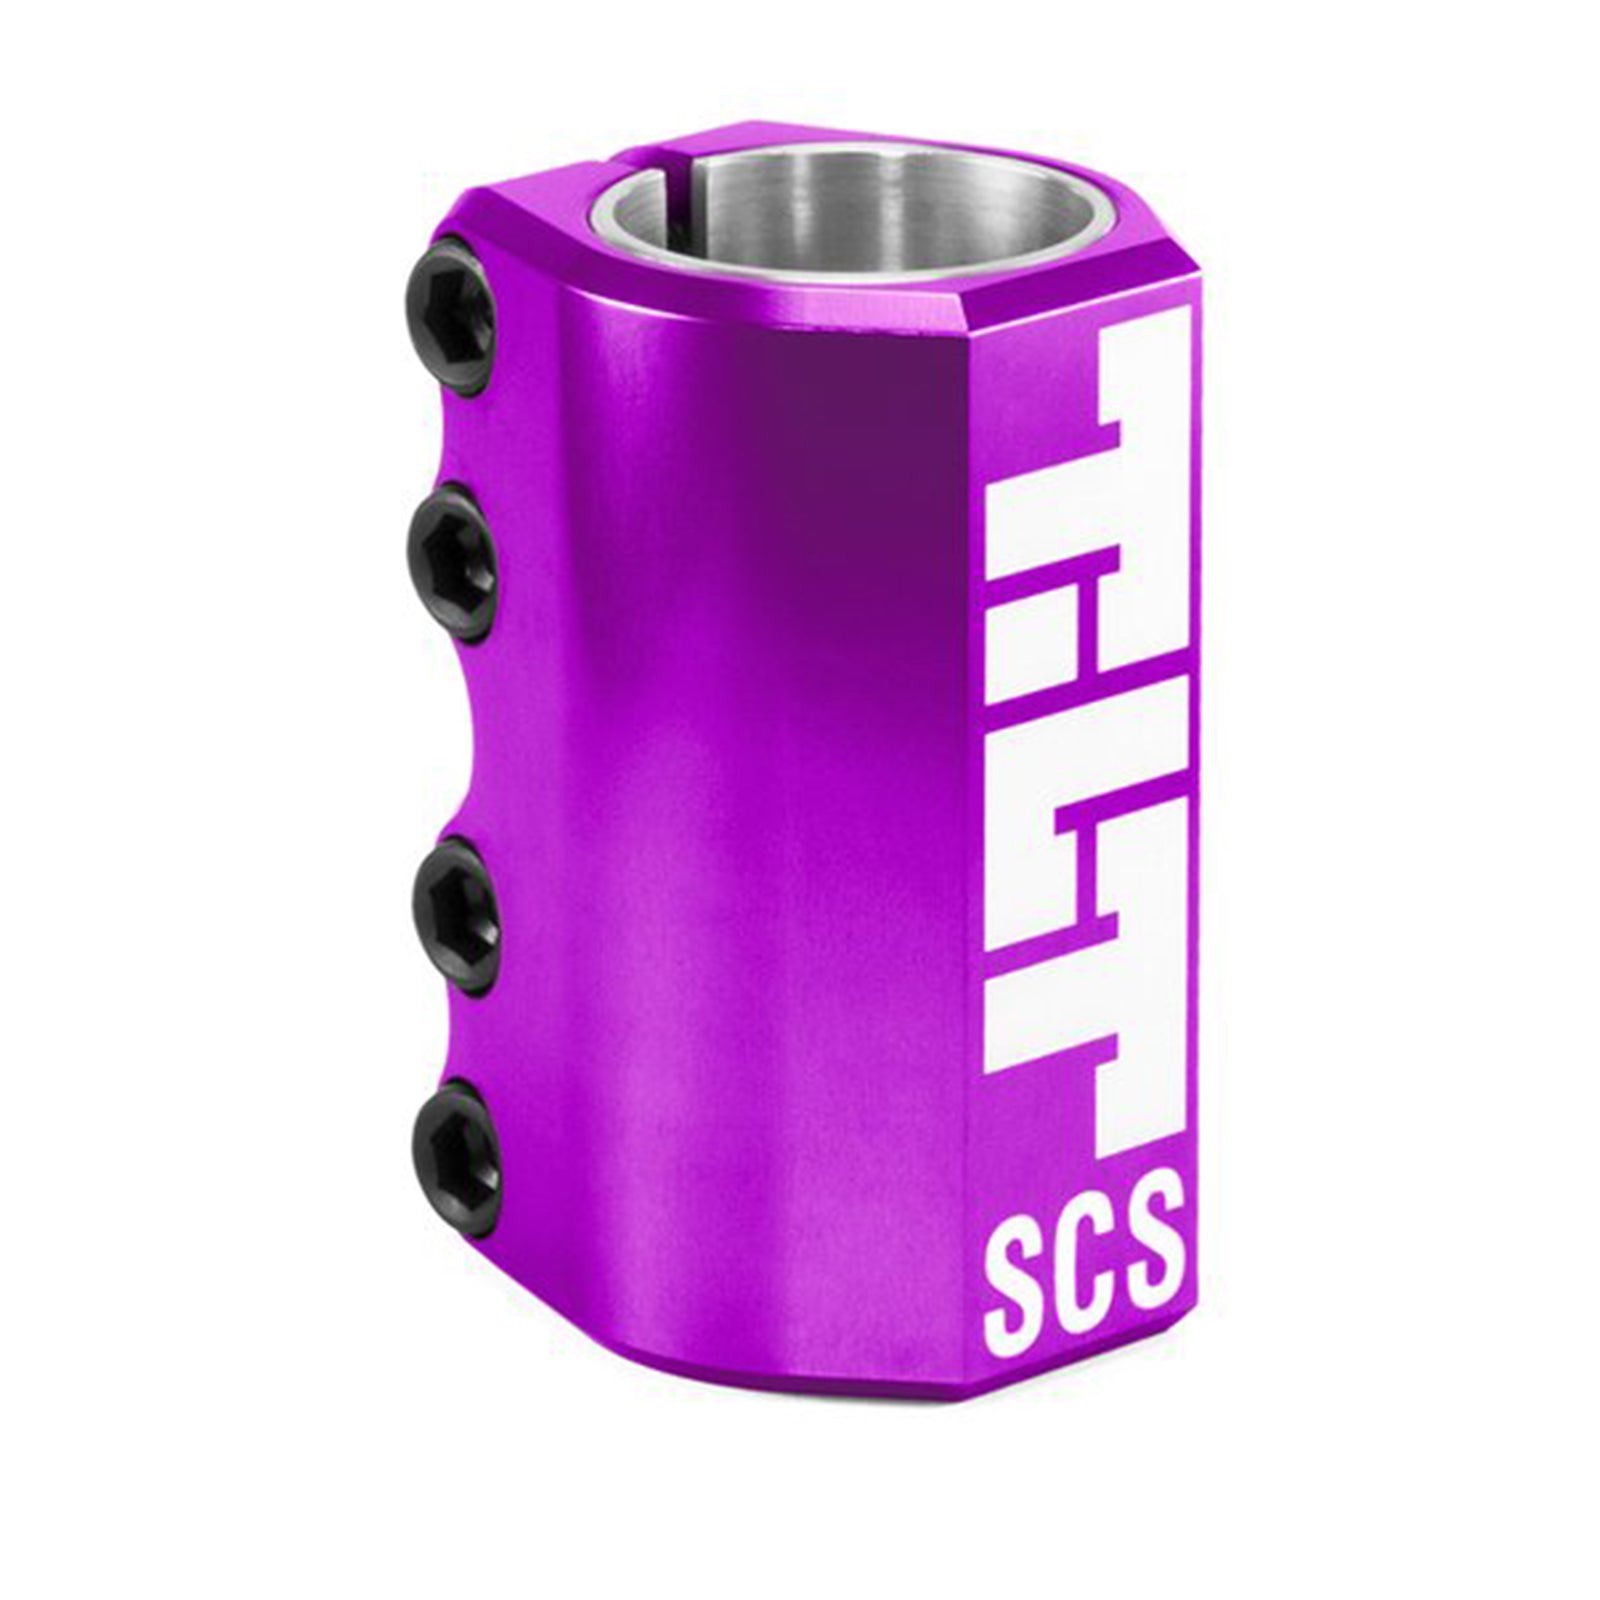 Tilt Classic SCS Clamp (6 colors)